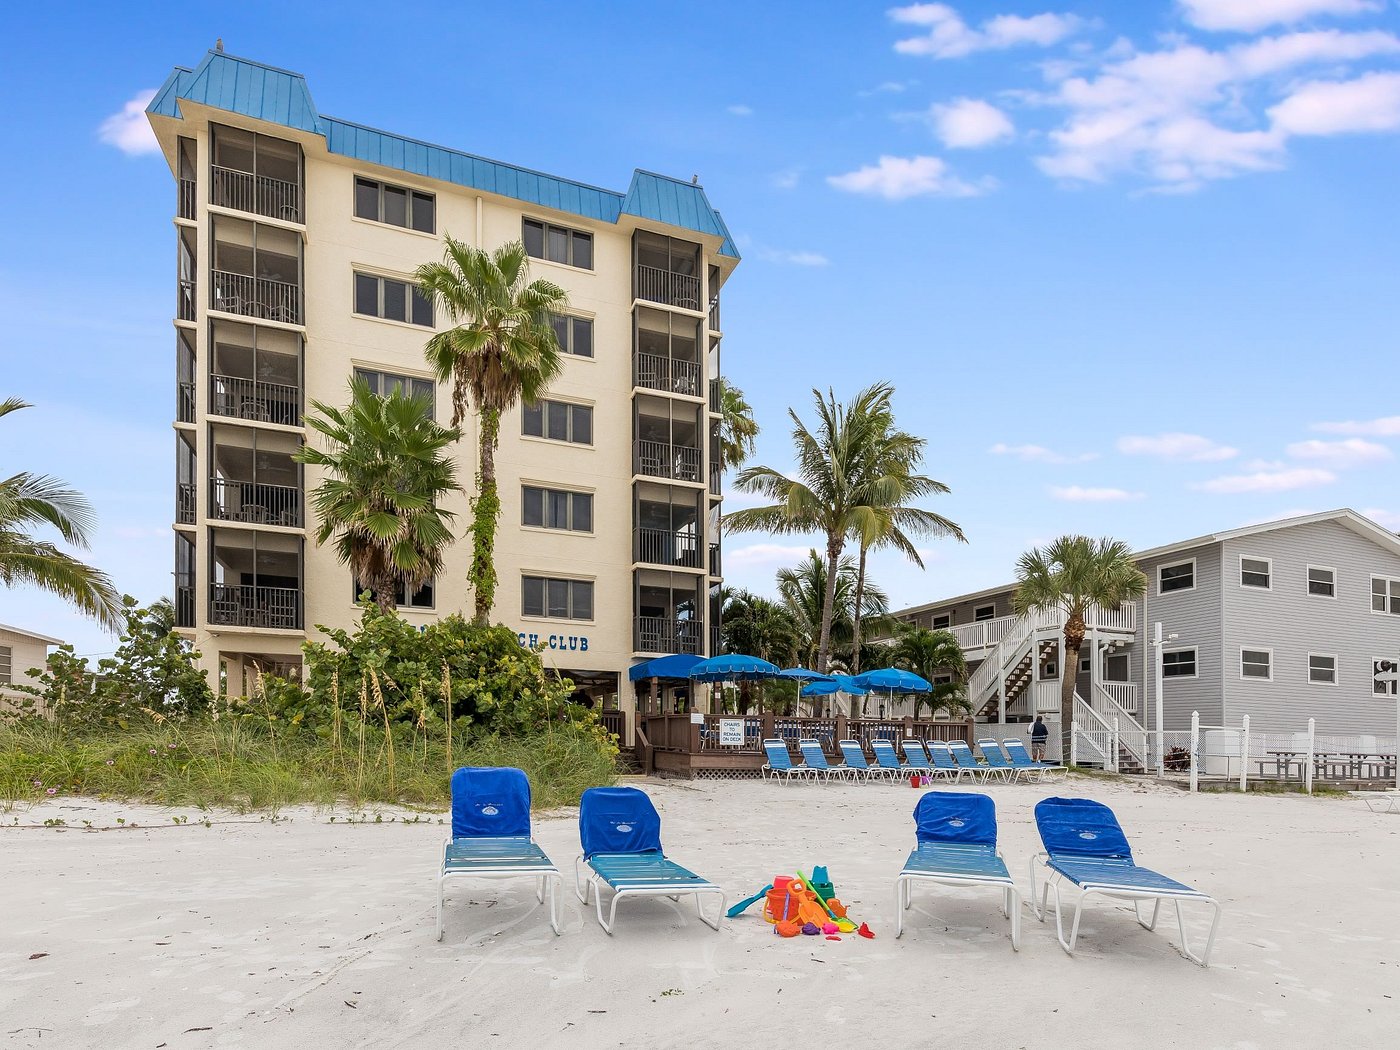 BEL-AIR BEACH CLUB - Condominium Reviews (Fort Myers Beach, FL)